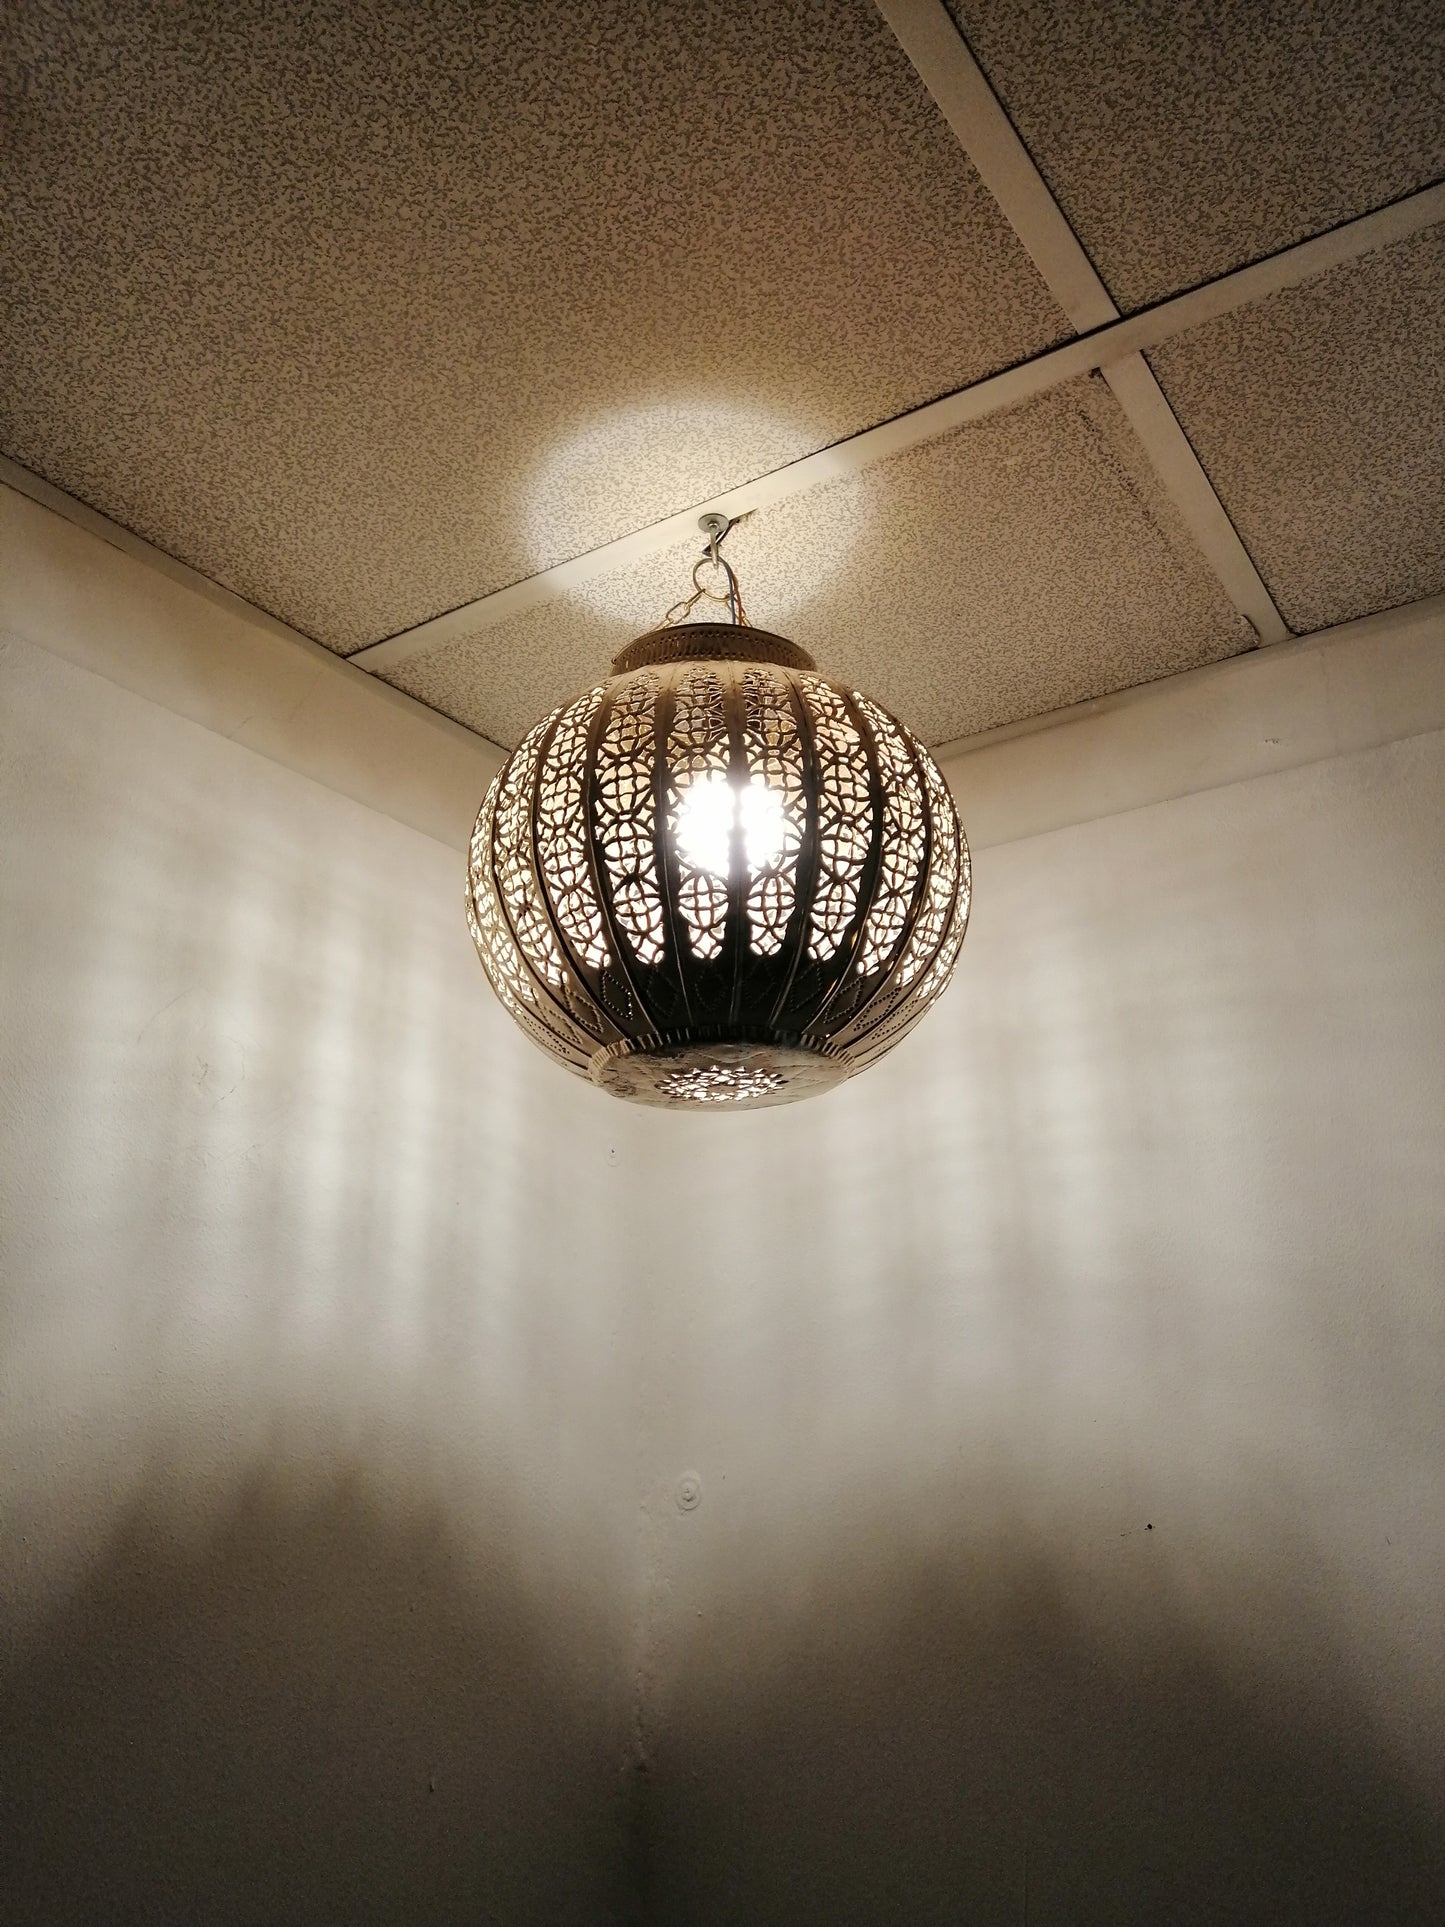 Etnisch decor Marokkaanse kroonluchter Oosterse lantaarnlamp 0603191019